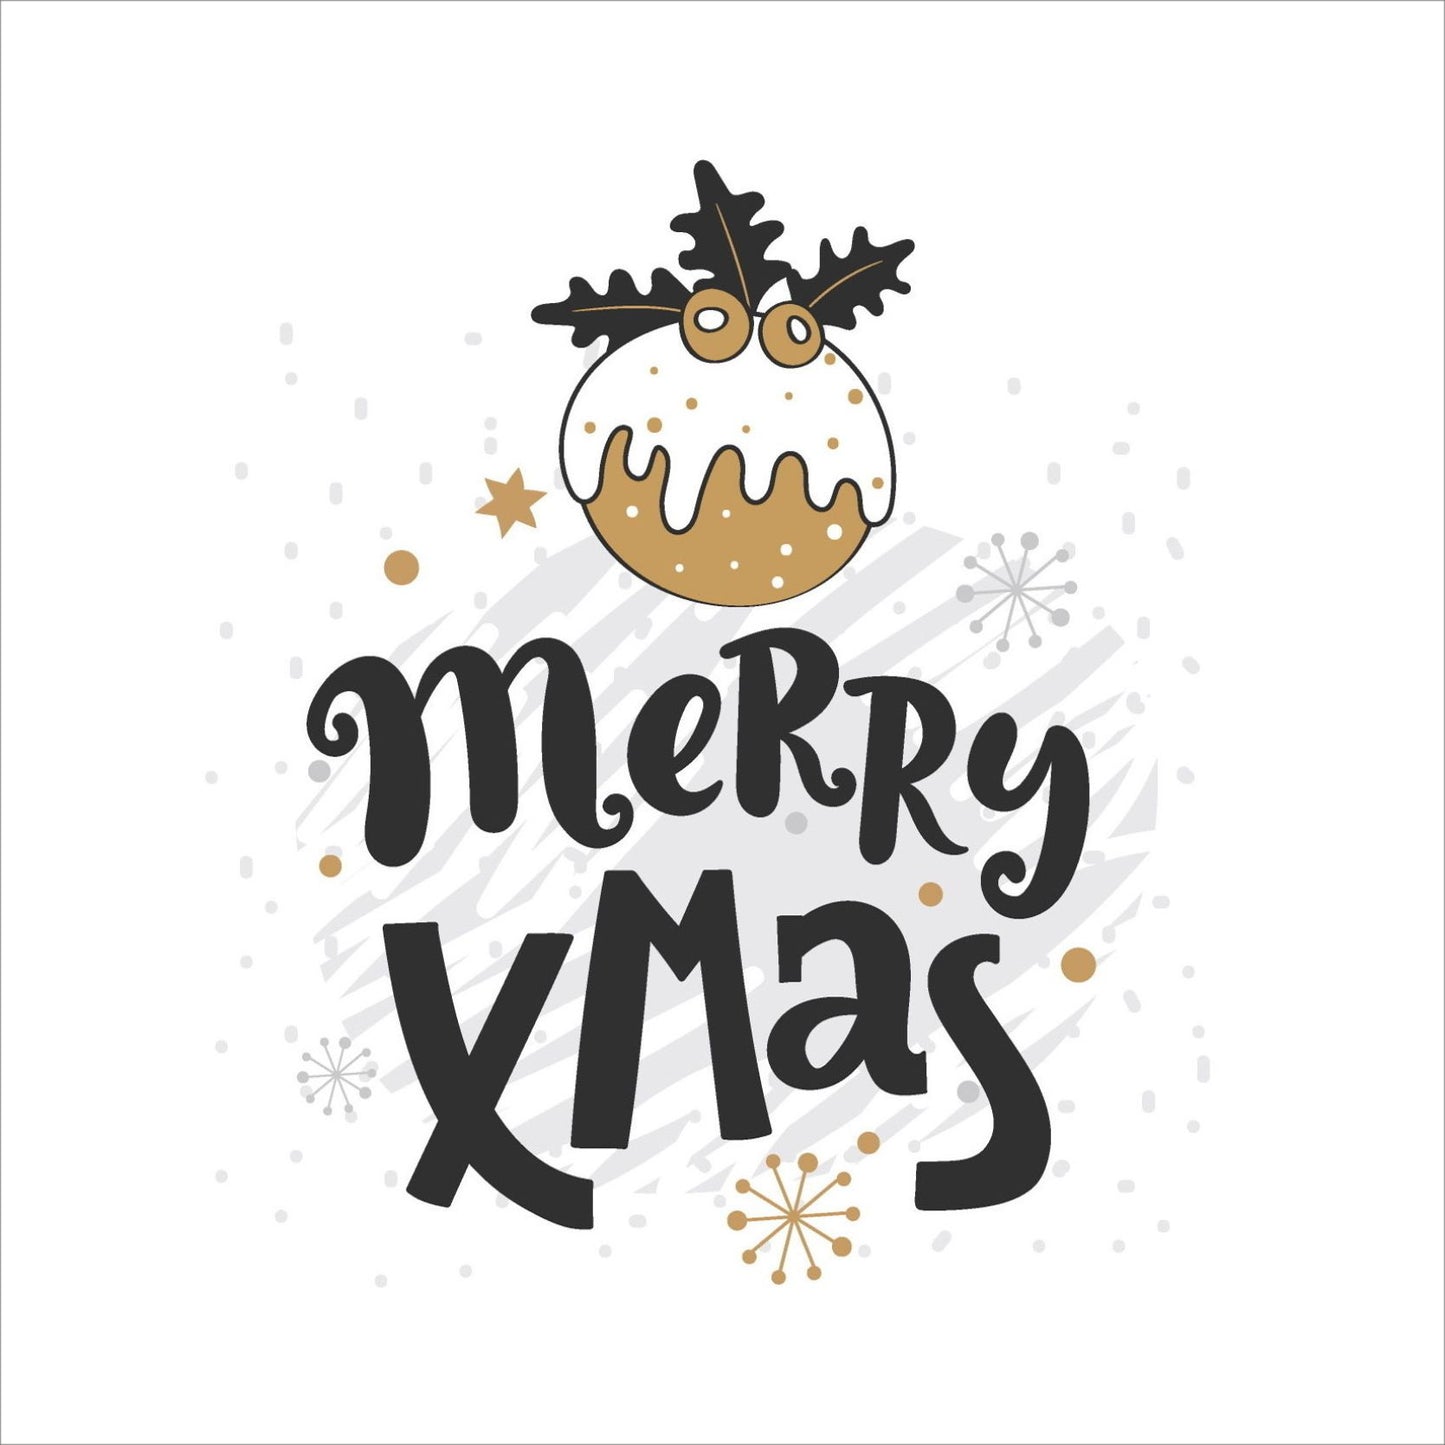 Søte julekort i håndtegnet cartoon. 10 pk. Fargemyanser i grå, sort, hvit og gull. Motiv av julekule. Tekst på kort "merry christmas"